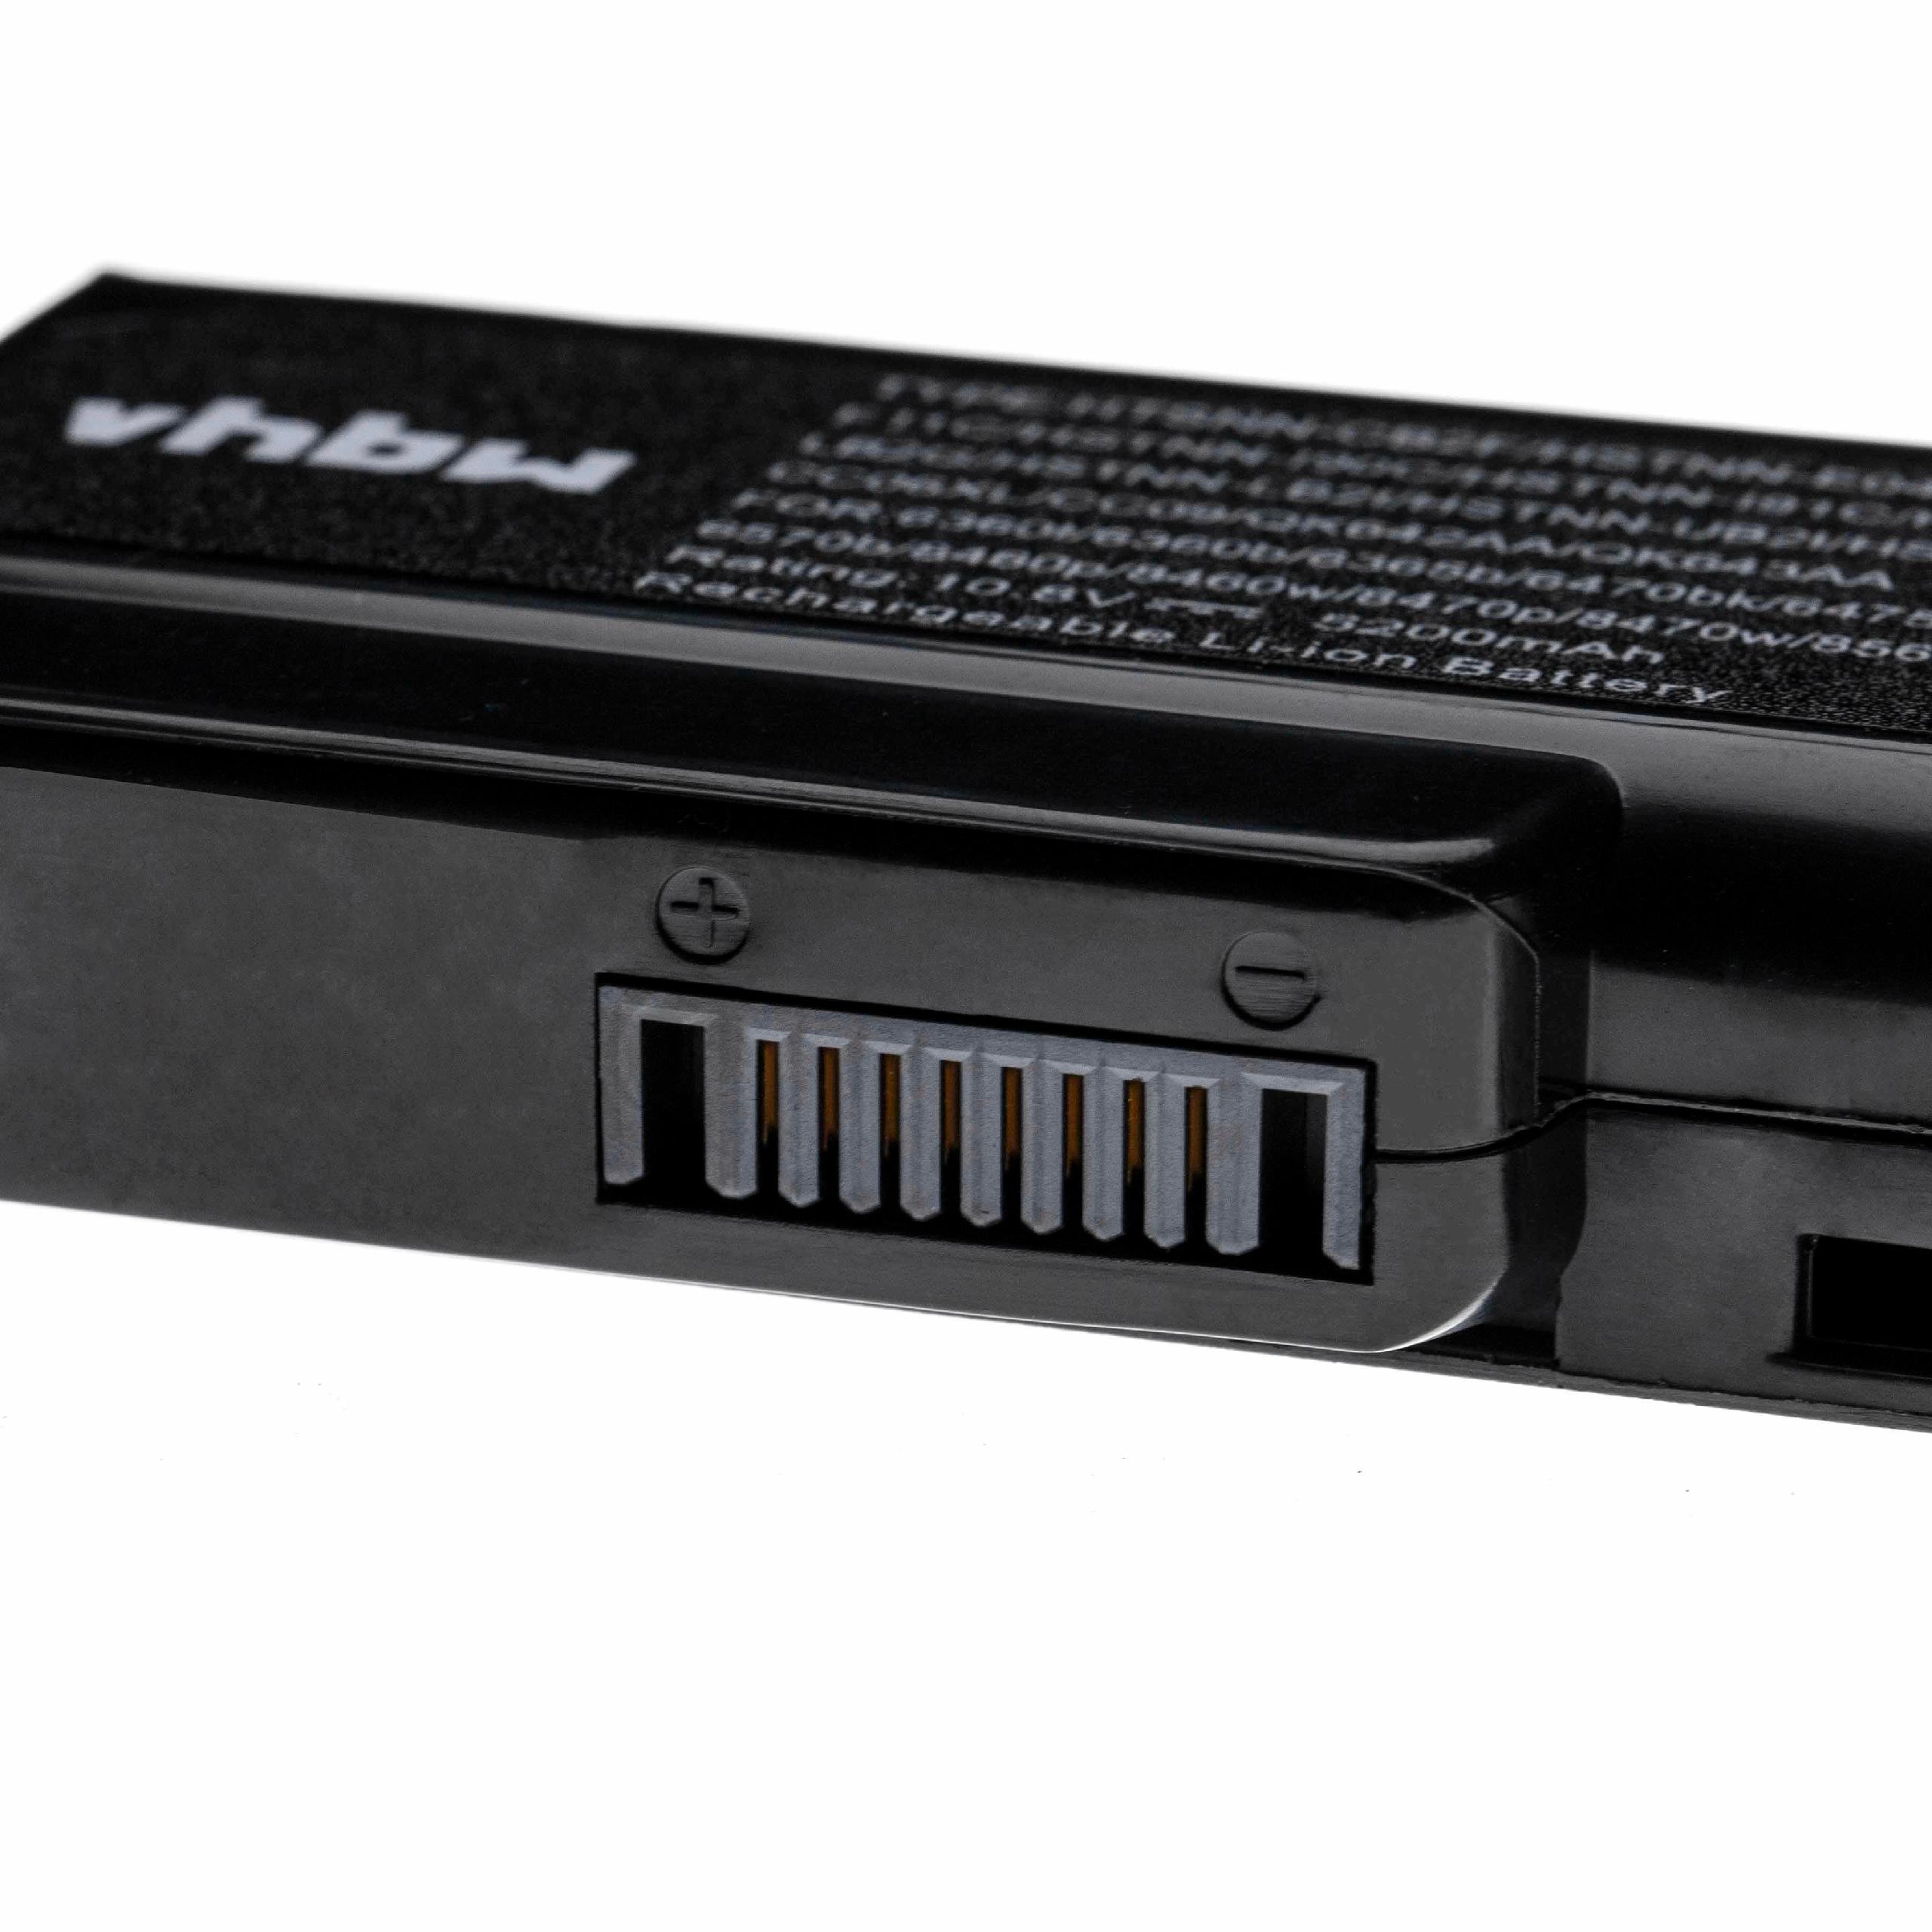 Batterie remplace HP 628368-241, 628368-251, 628368-421 pour ordinateur portable - 5200mAh 10,8V Li-ion, noir